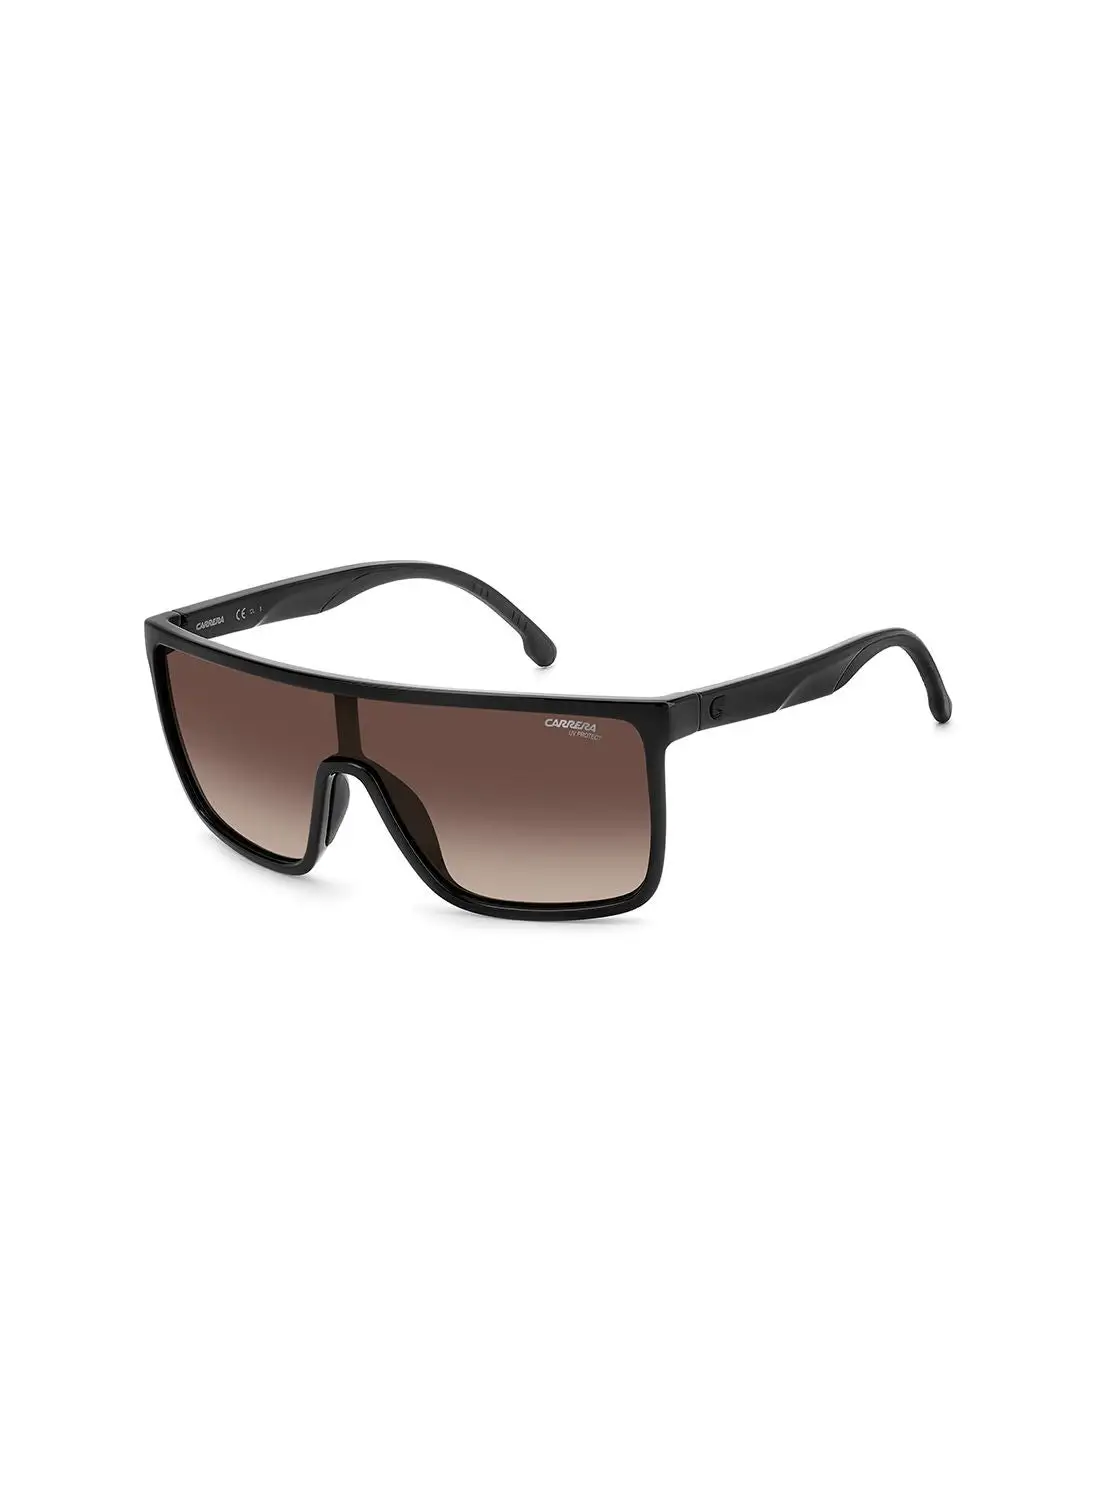 نظارة شمسية كاريرا للجنسين للحماية من الأشعة فوق البنفسجية - Carrera 8060/S Black 99 - مقاس العدسة: 99 ملم